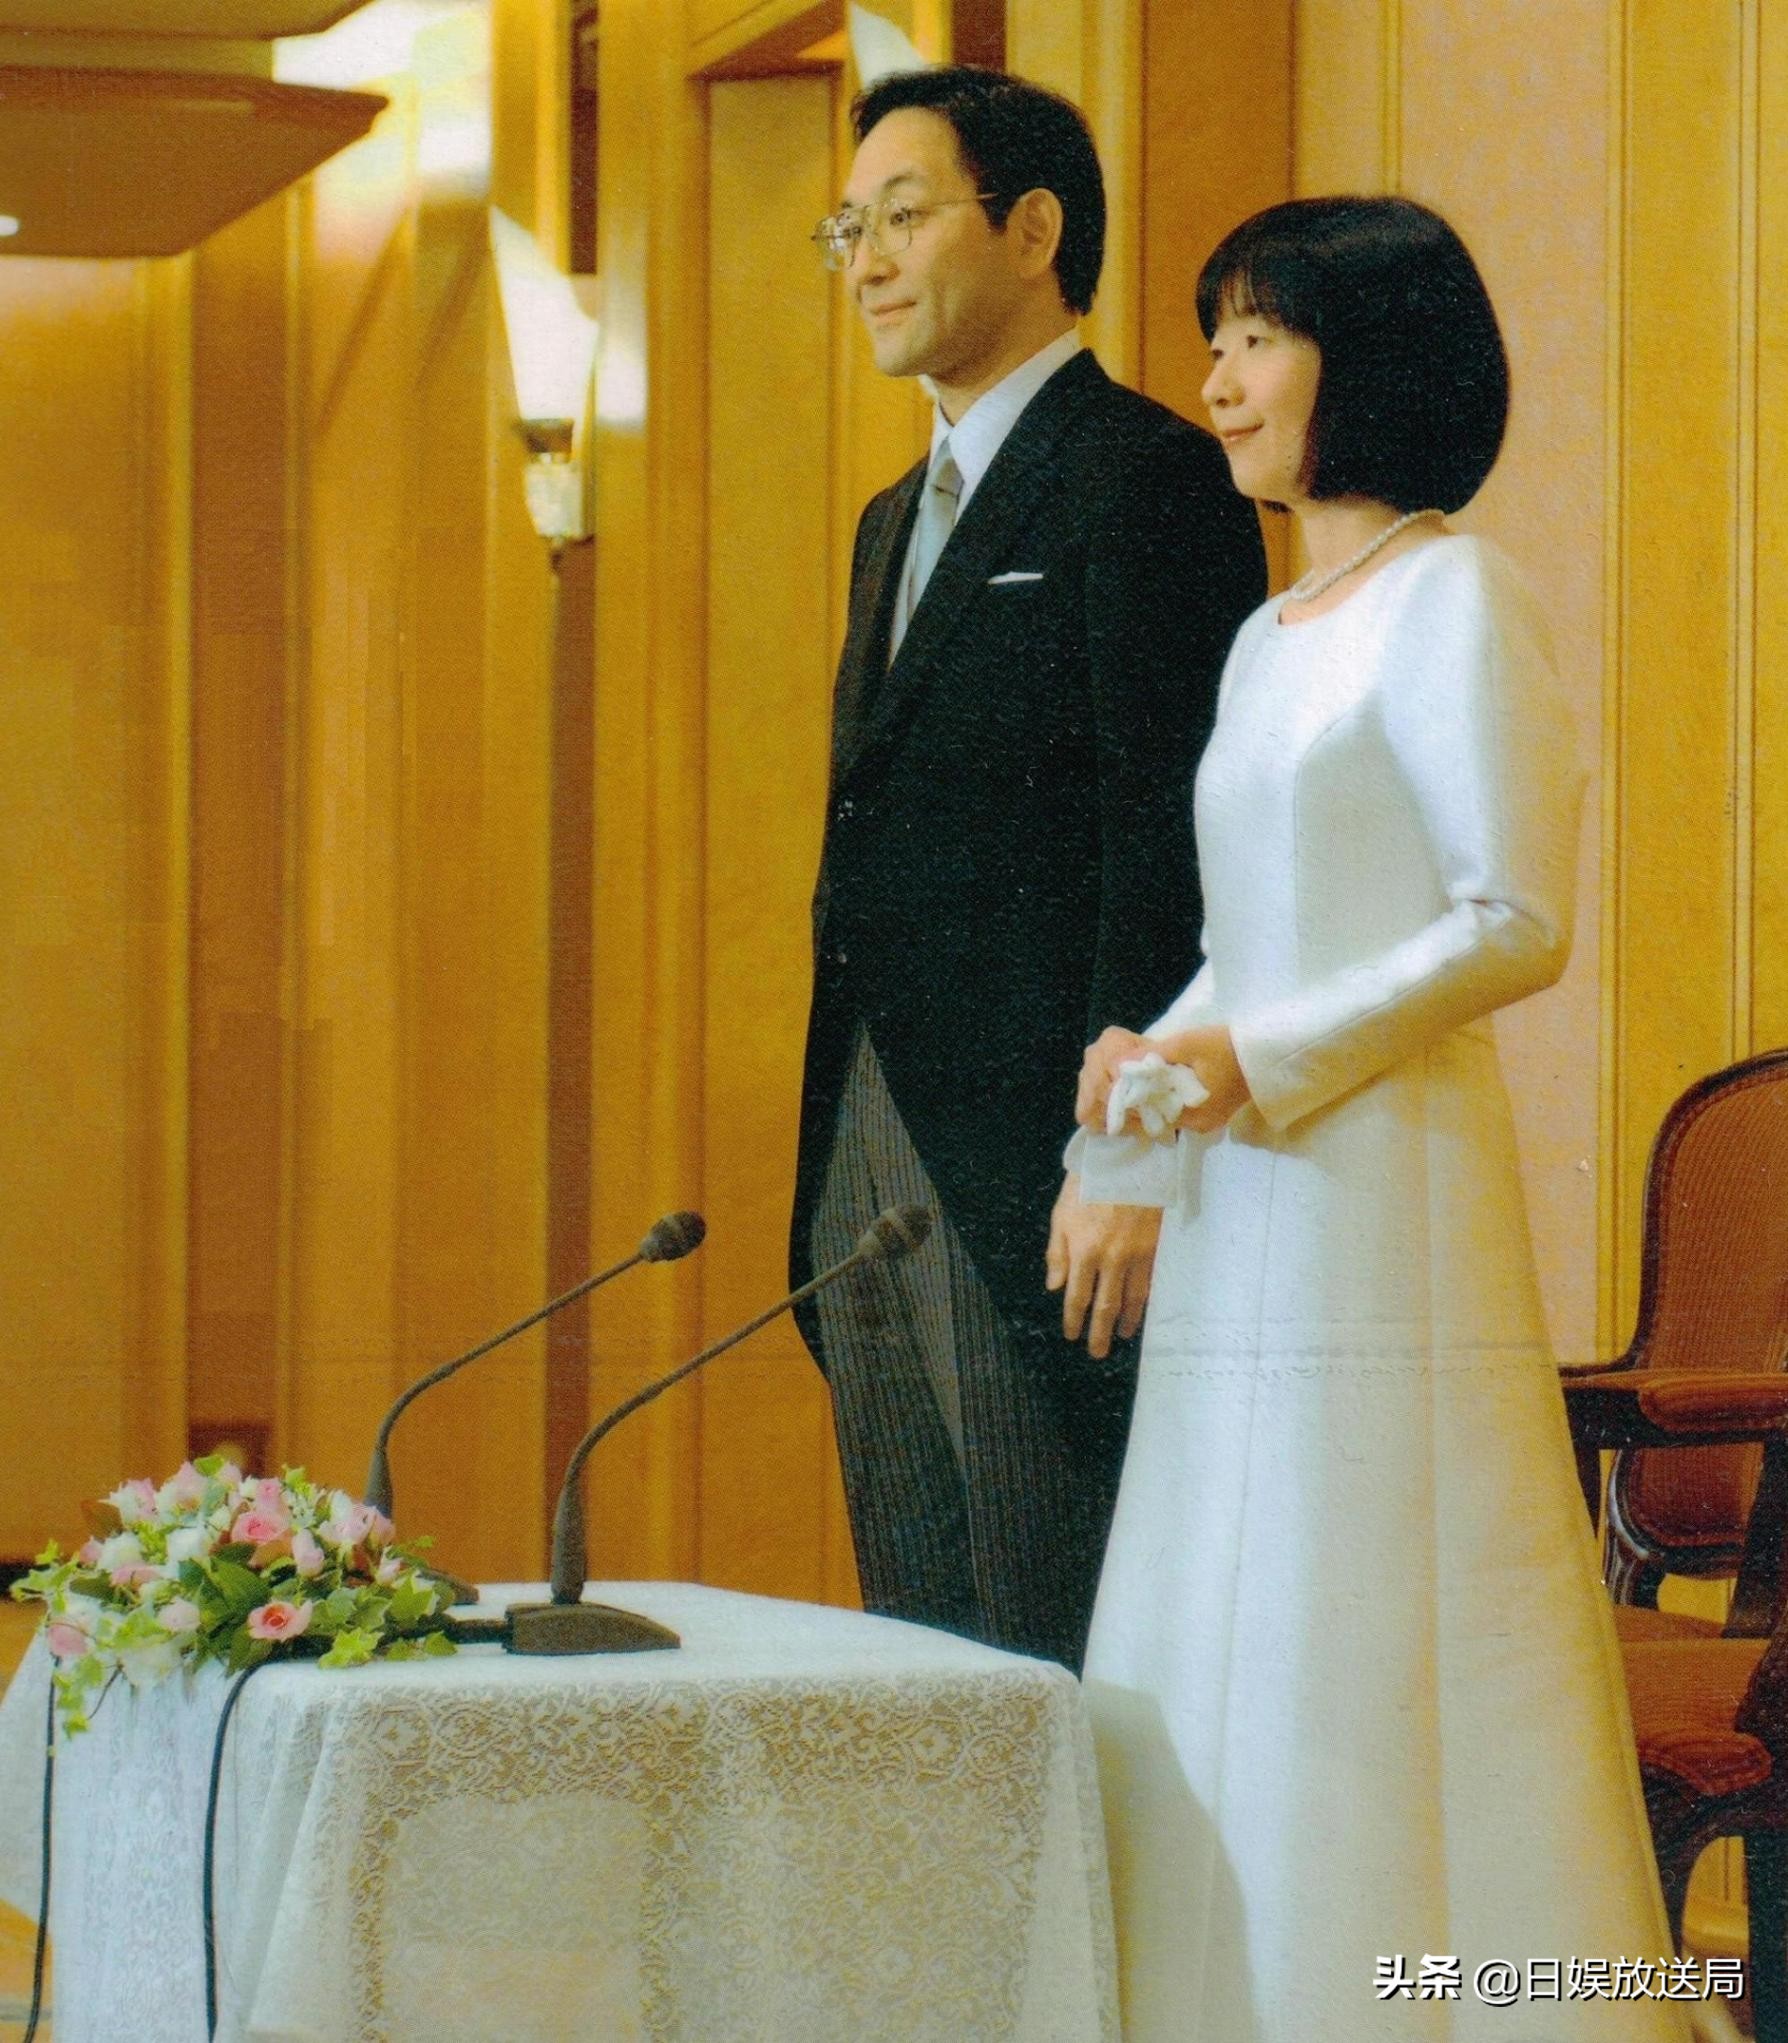 下嫁的日本皇室公主们—以下嫁为前提被抚养长大的皇女黑田清子